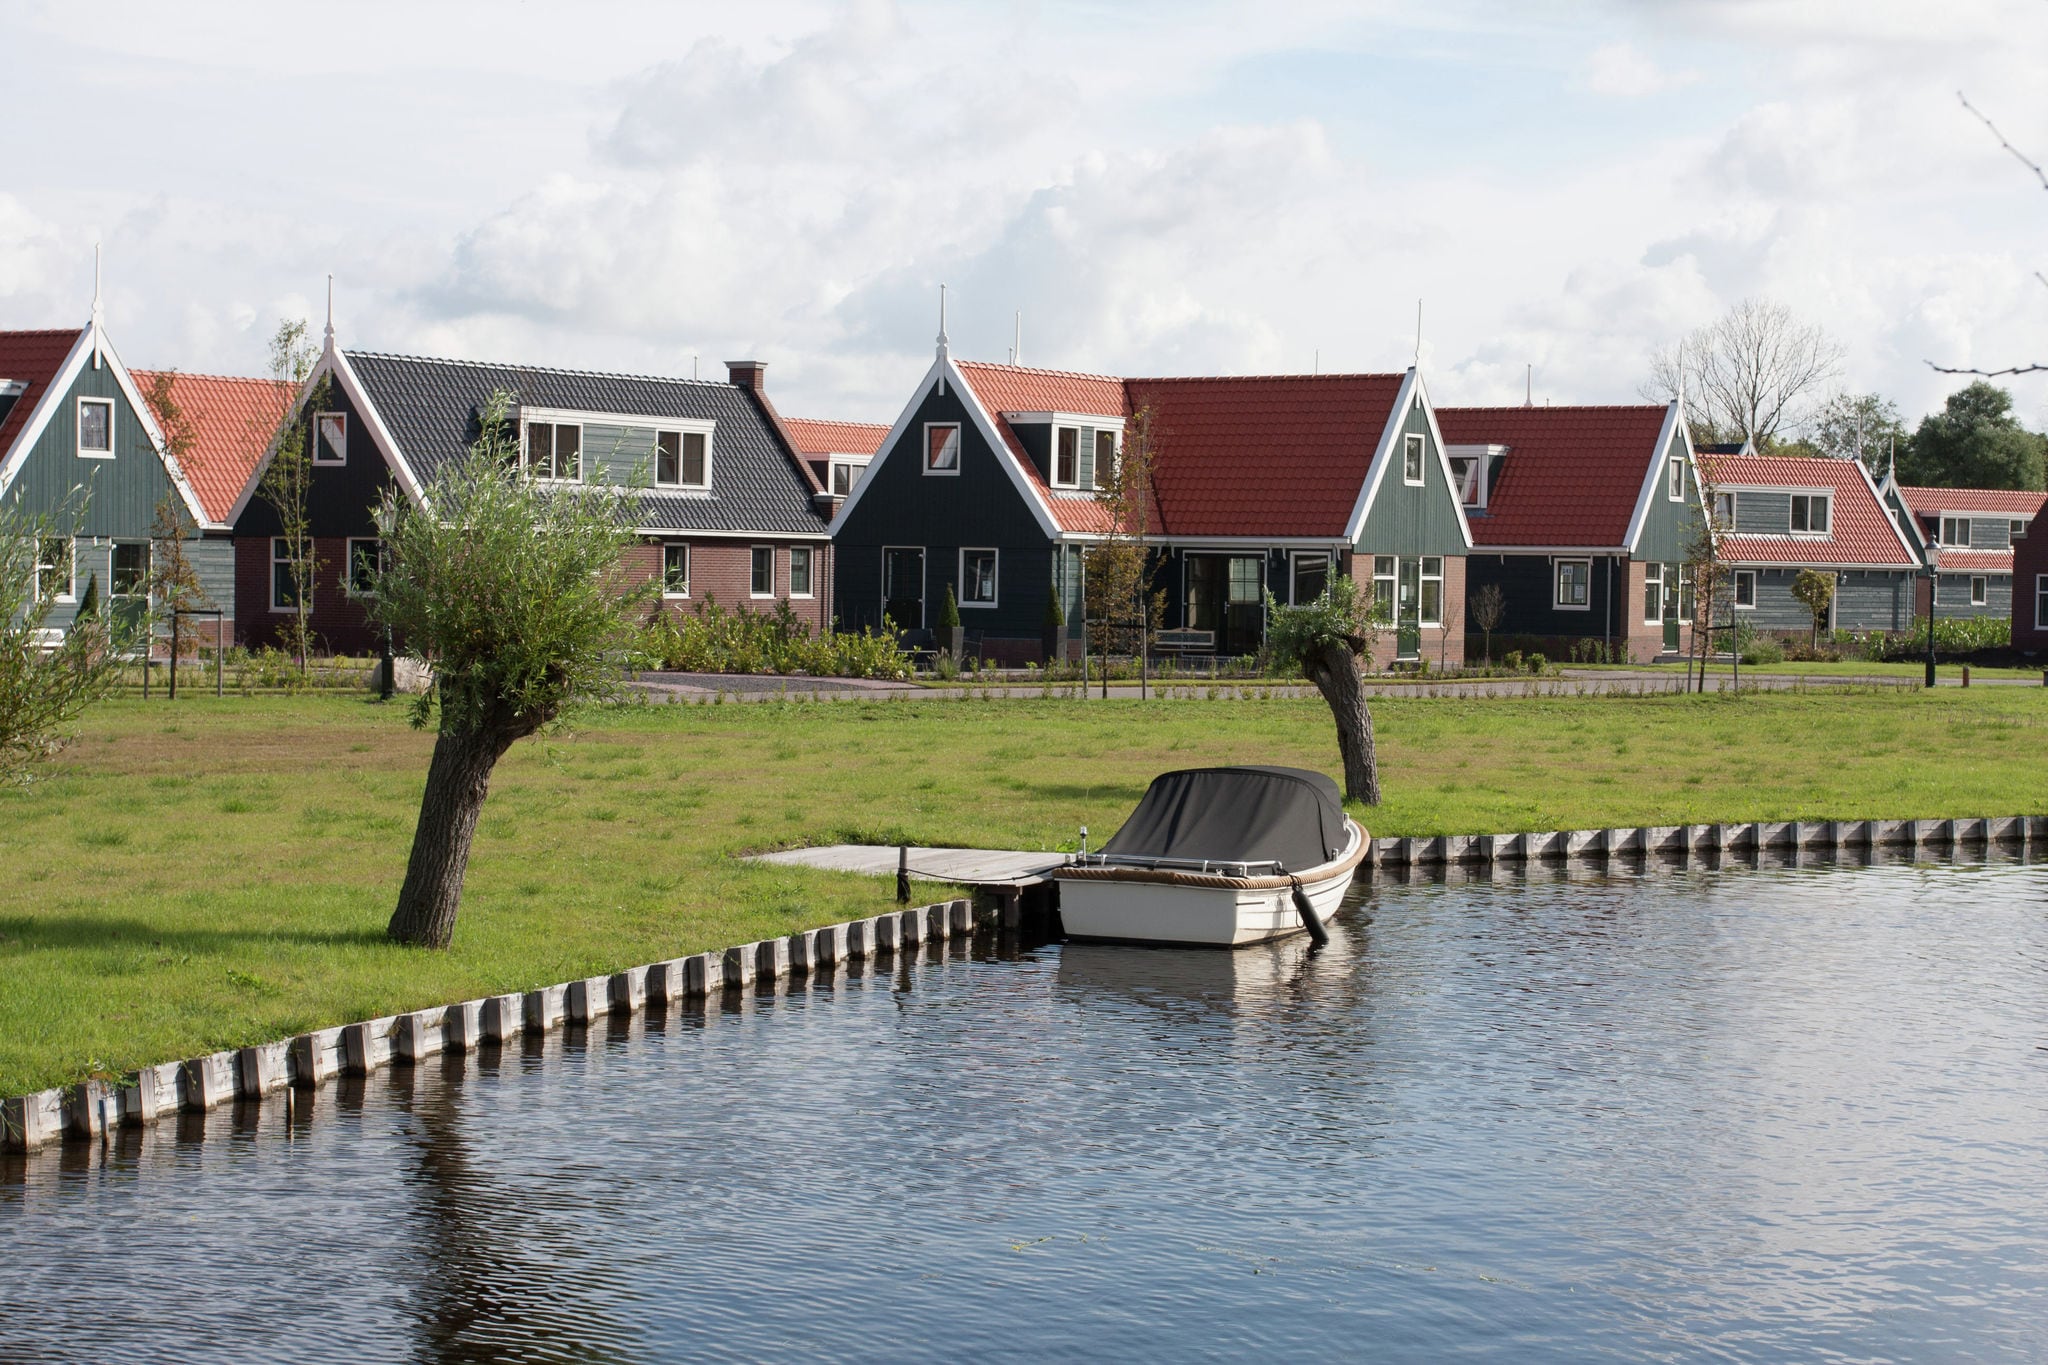 Maison de vacances de Zaanse à 15 km d'Alkmaar